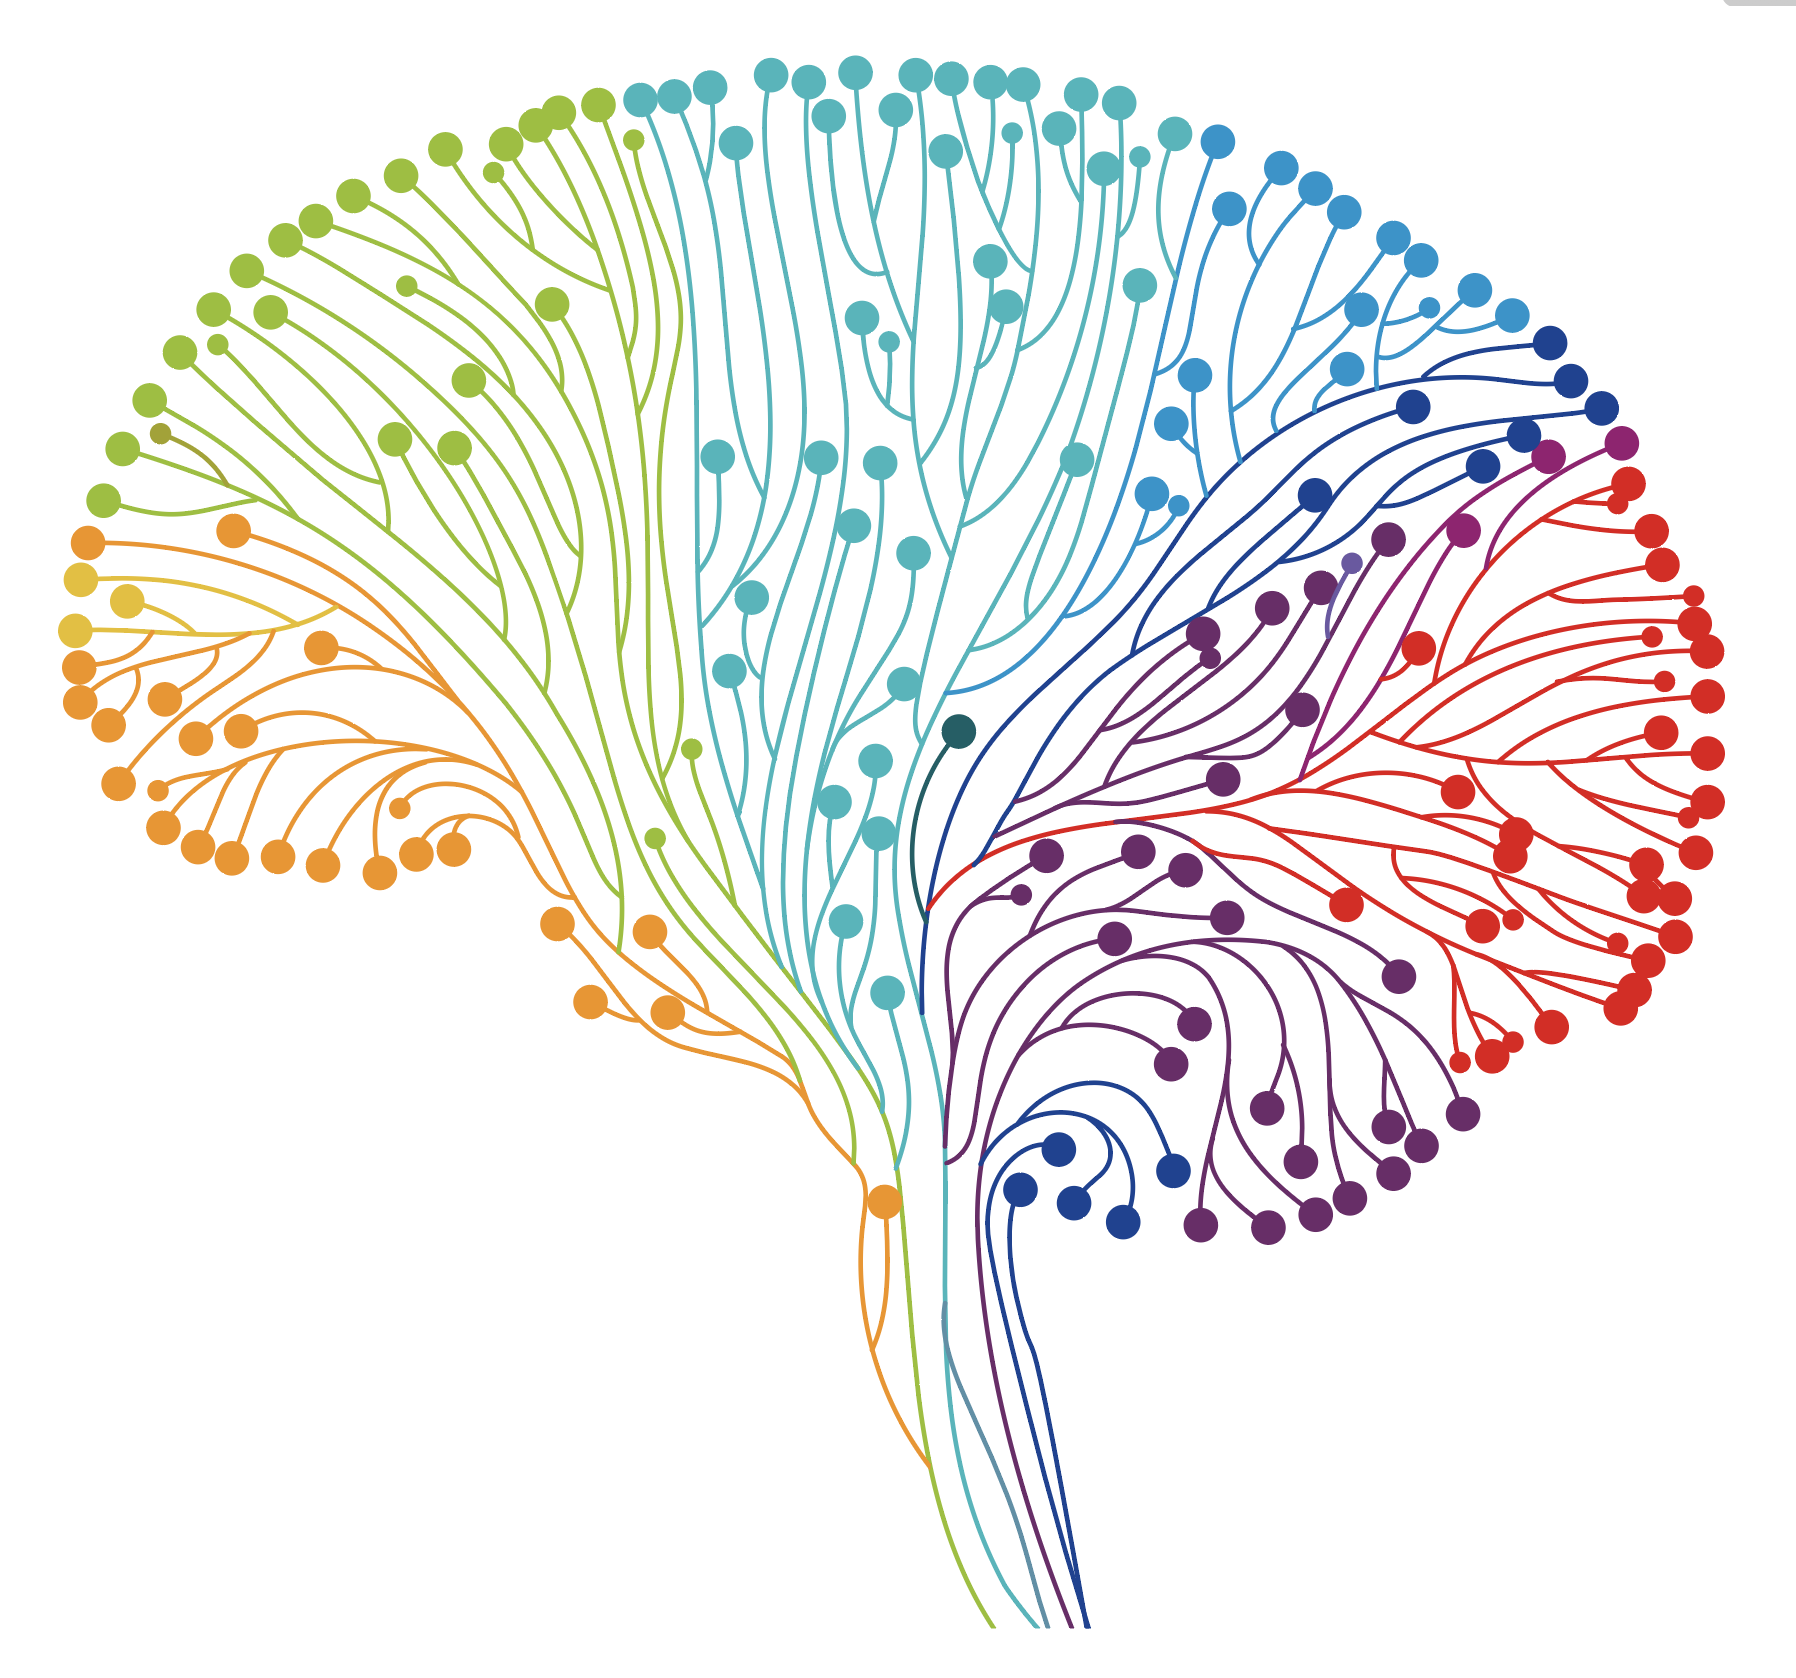 imagem de cérebro com estilo tecnológico em tons de azul